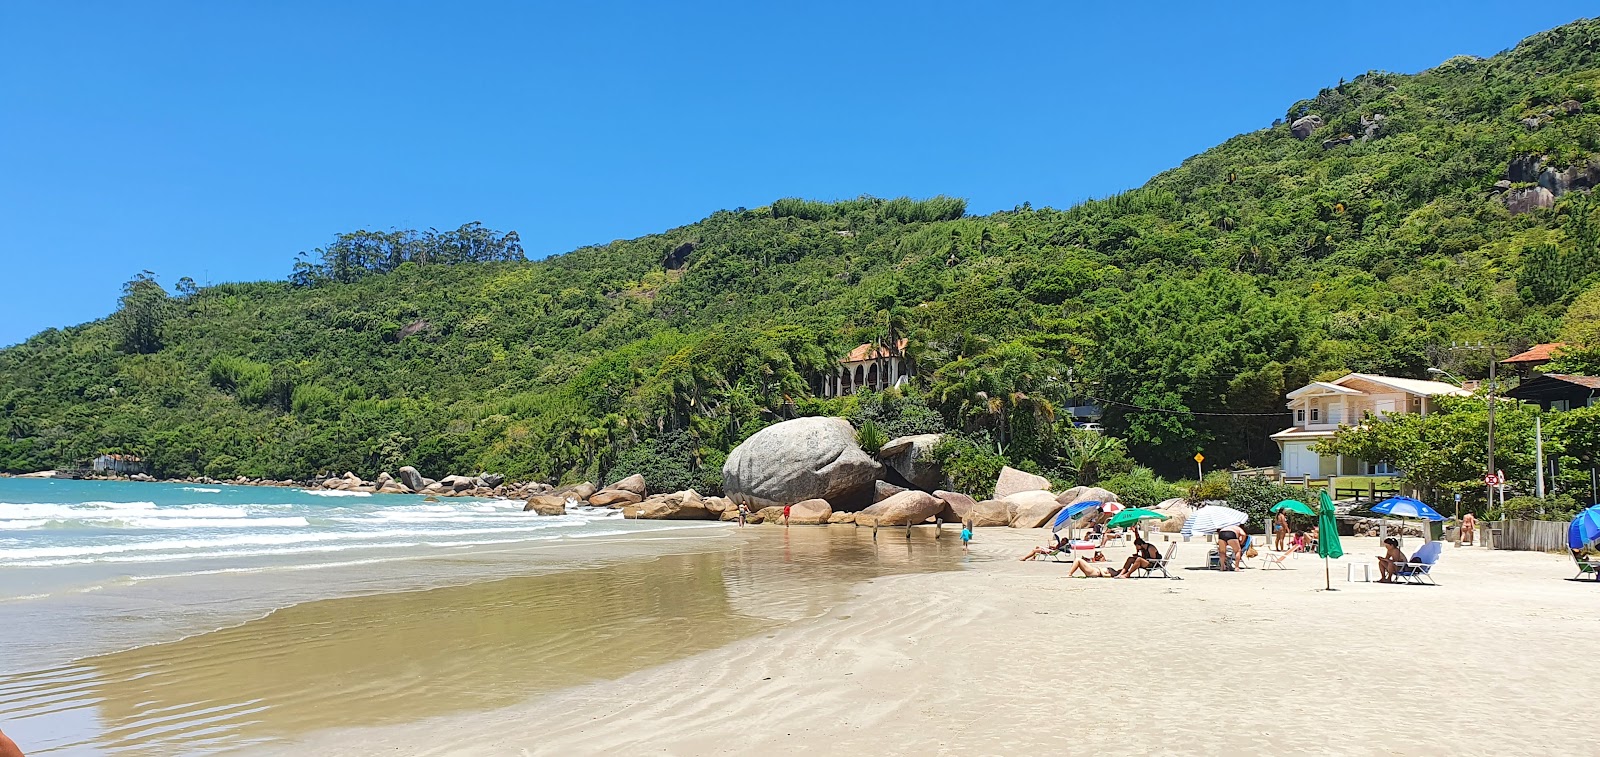 Praia do Conceicao'in fotoğrafı imkanlar alanı